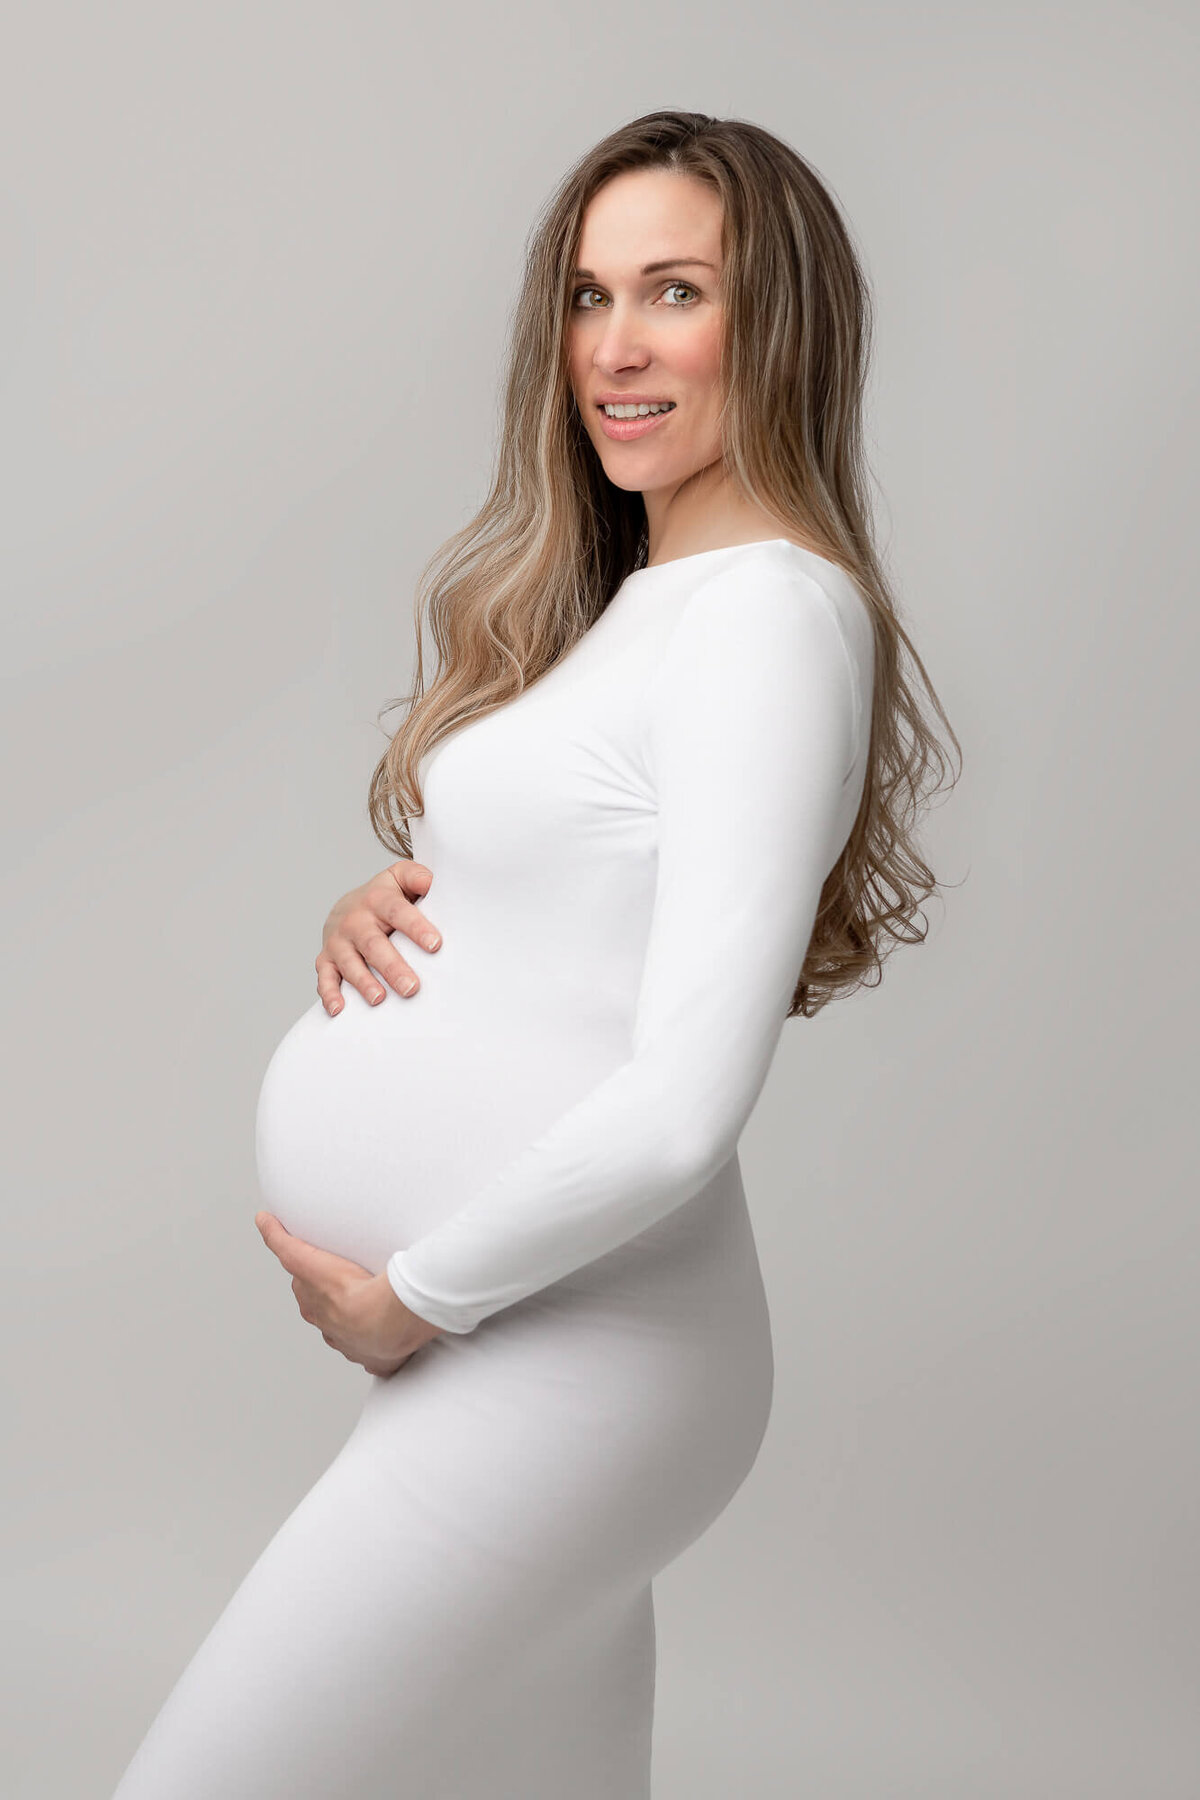 pregnancy photo of mom in white dress